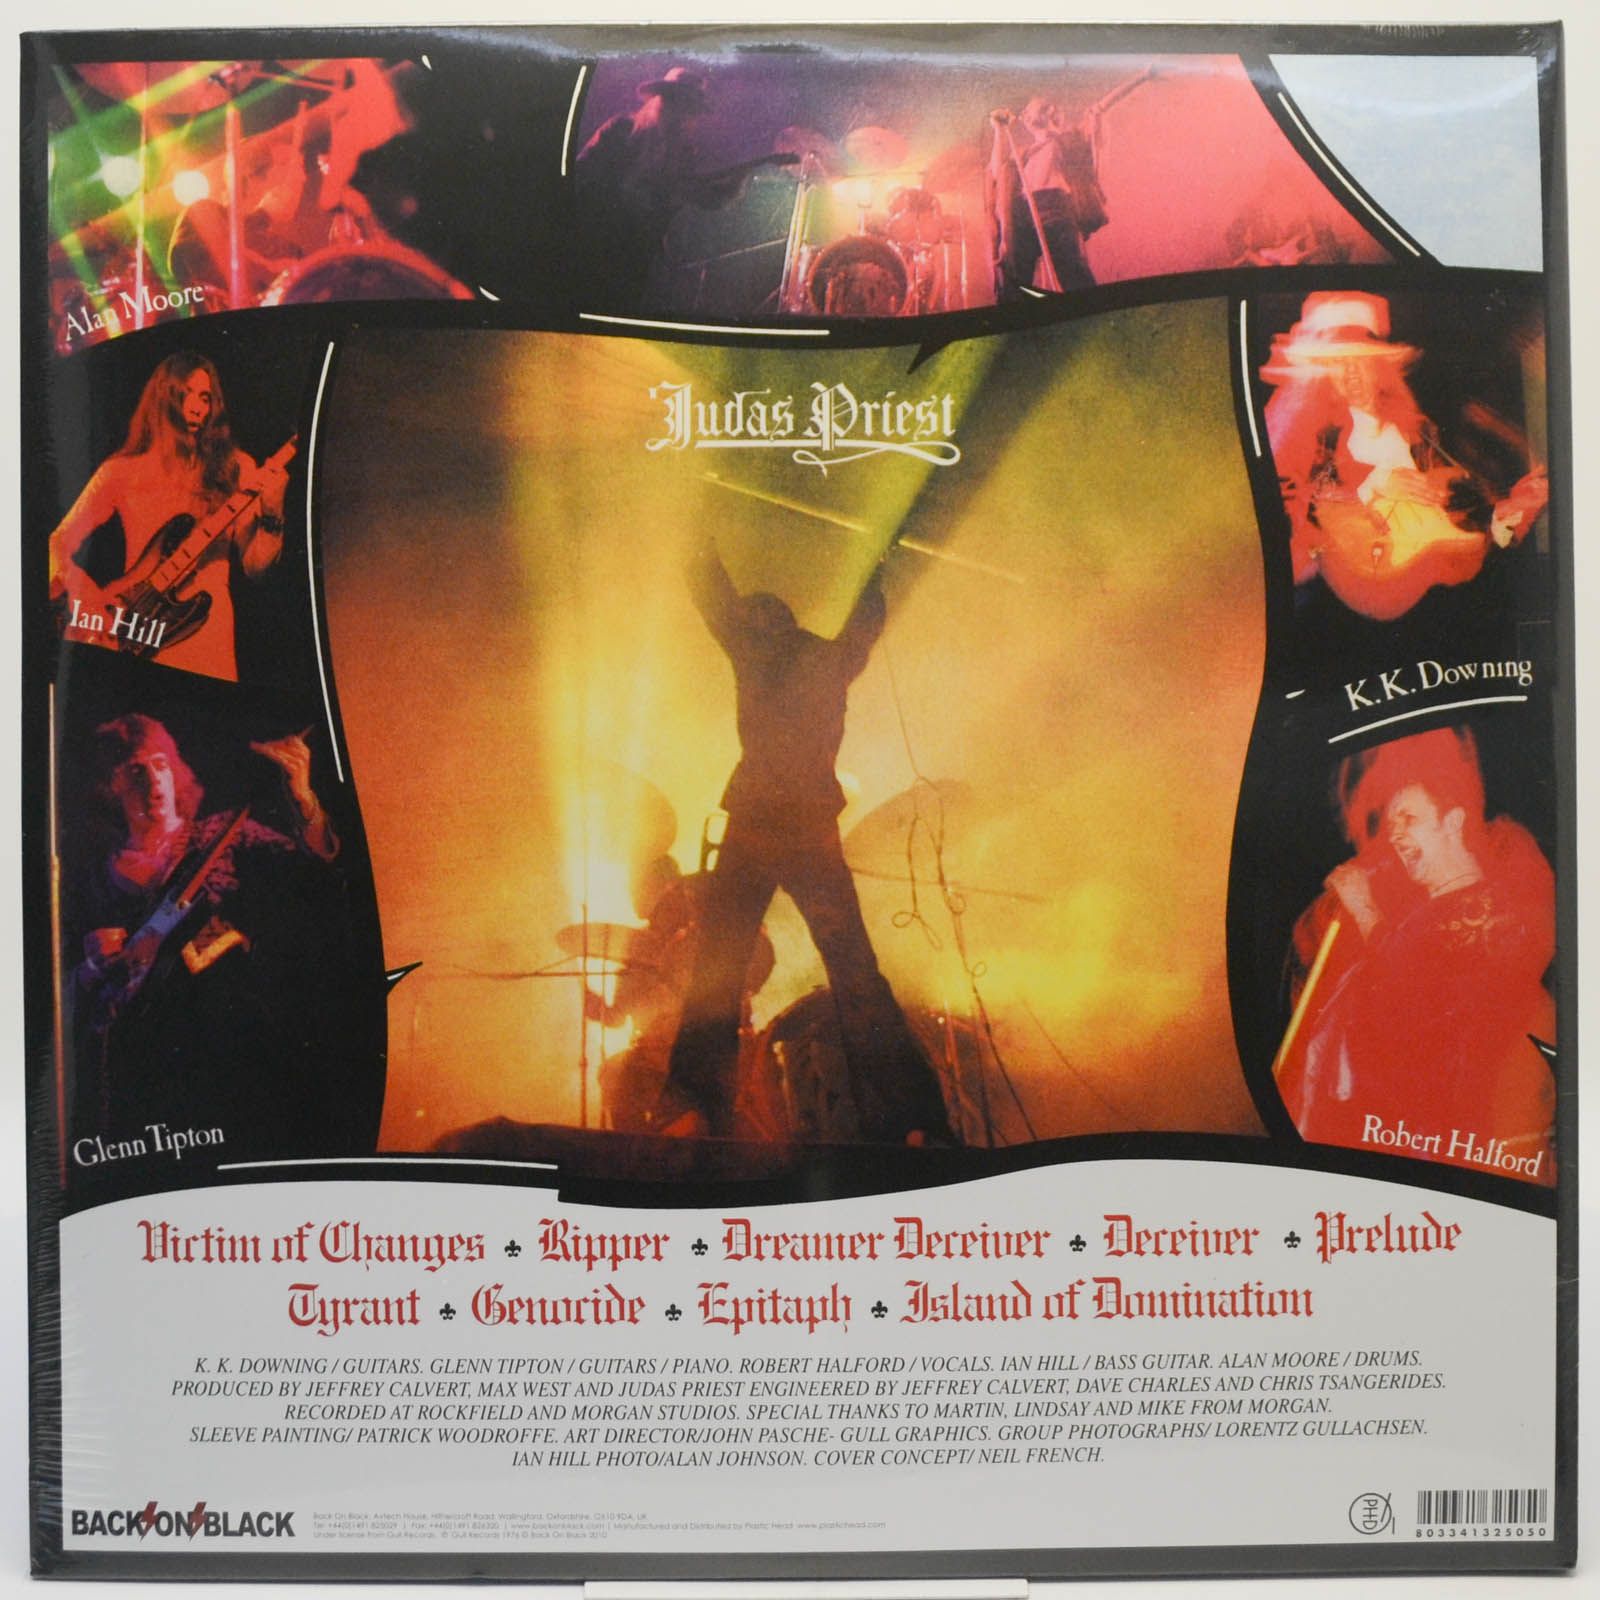 Judas Priest — Sad Wings Of Destiny (UK), 1976